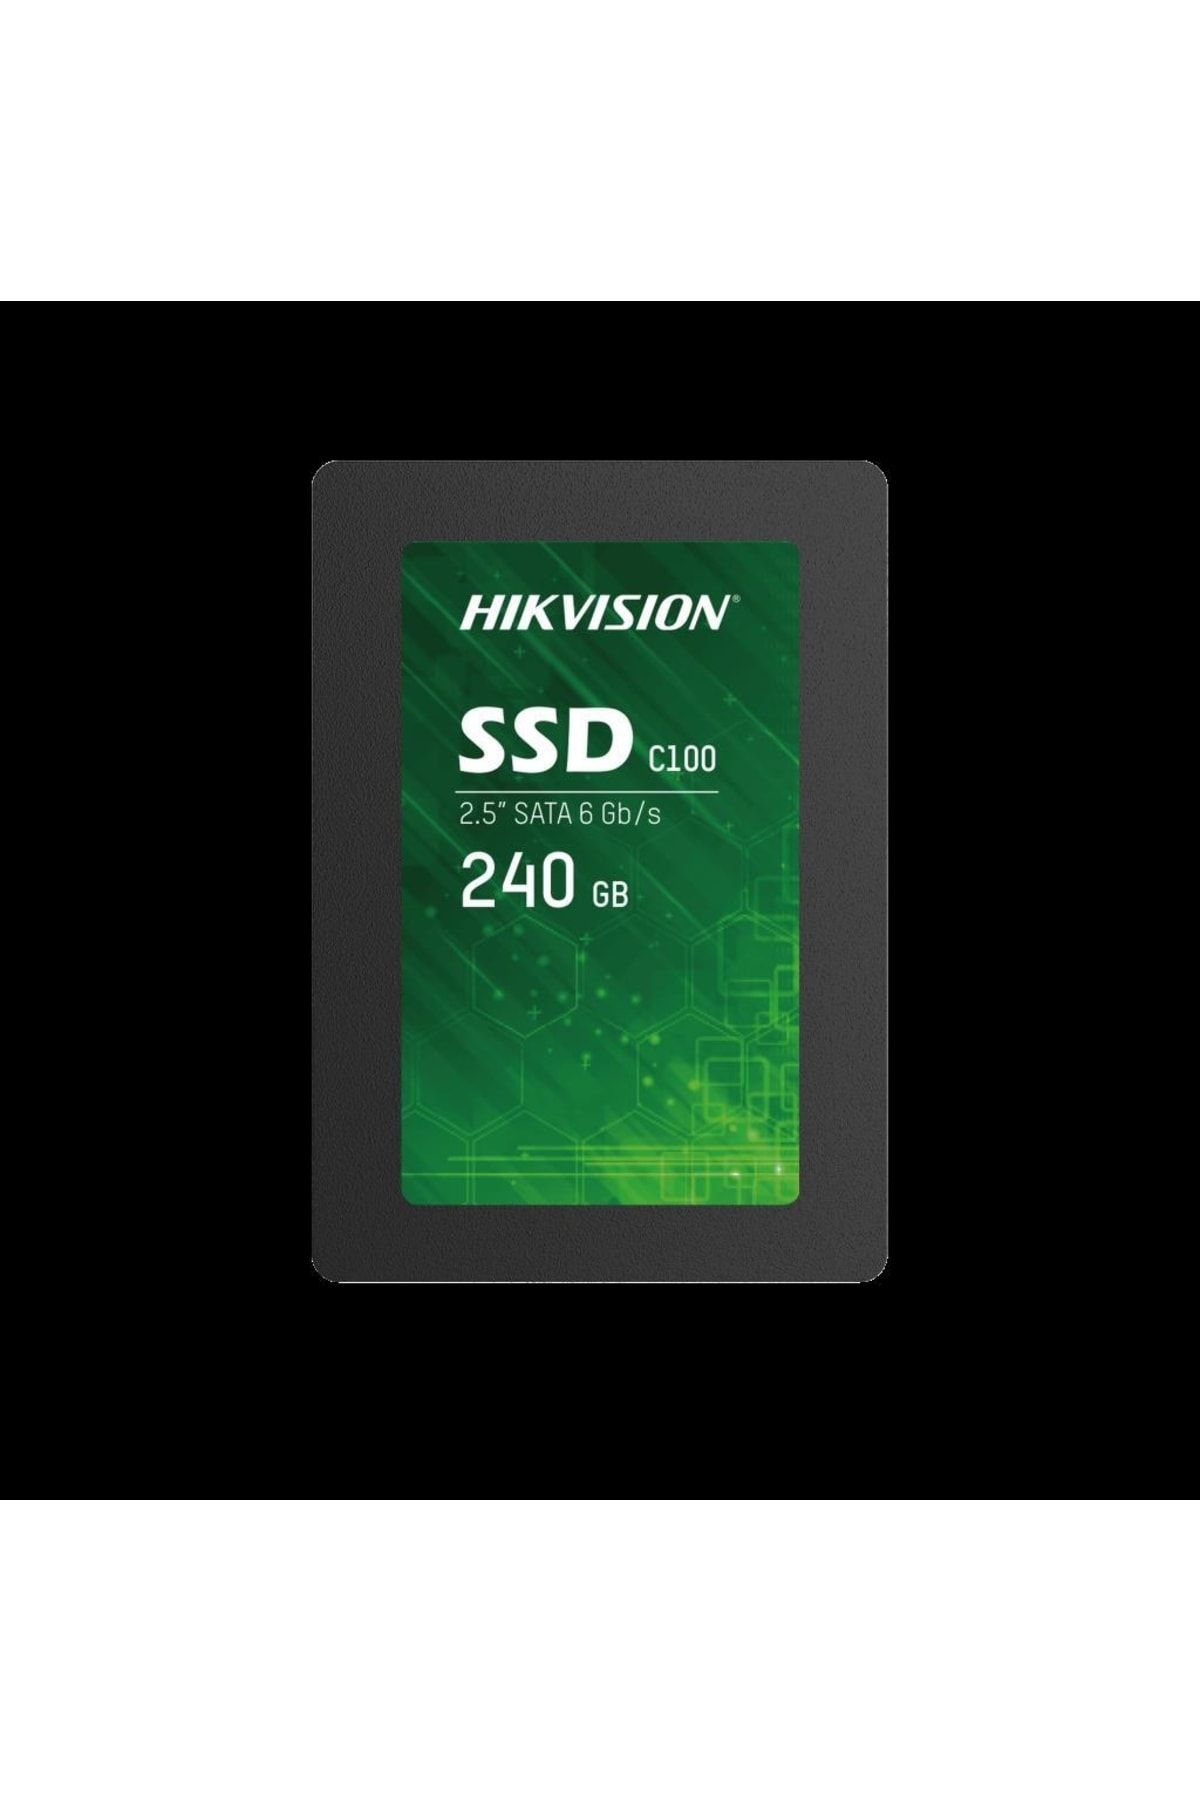 Hikvision 240gb Ssd Disk Sata 3 Hs-ssd-c100-240g 550mb-450mb Harddisk